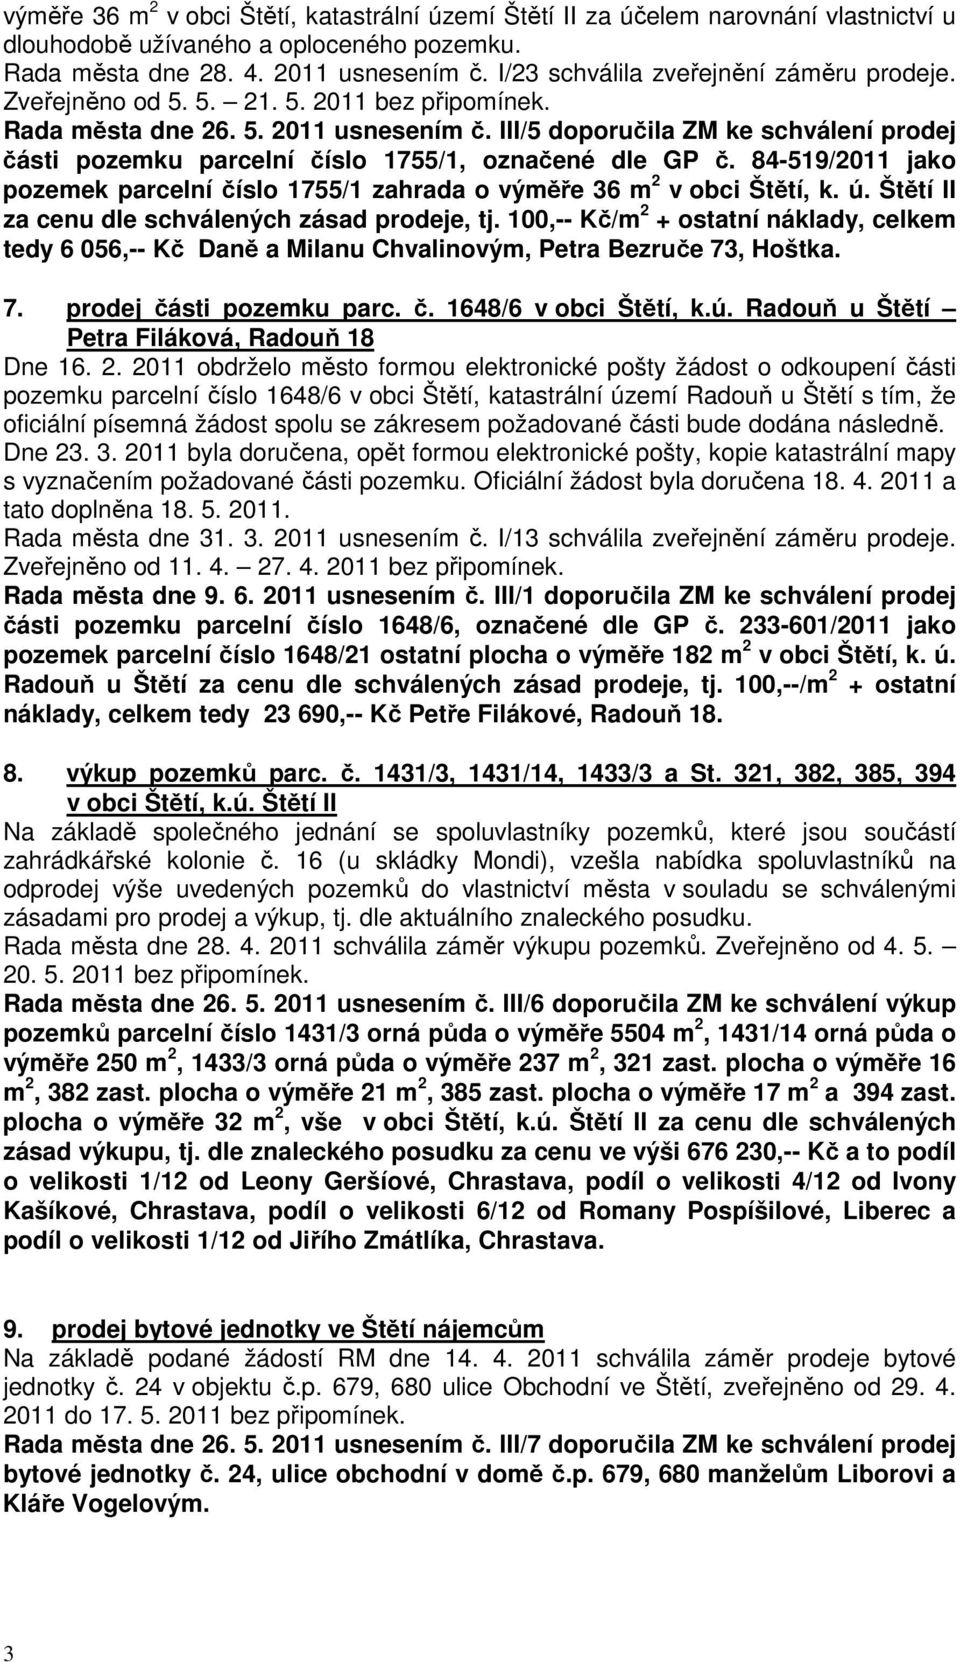 III/5 doporučila ZM ke schválení prodej části pozemku parcelní číslo 1755/1, označené dle GP č. 84-519/2011 jako pozemek parcelní číslo 1755/1 zahrada o výměře 36 m 2 v obci Štětí, k. ú.